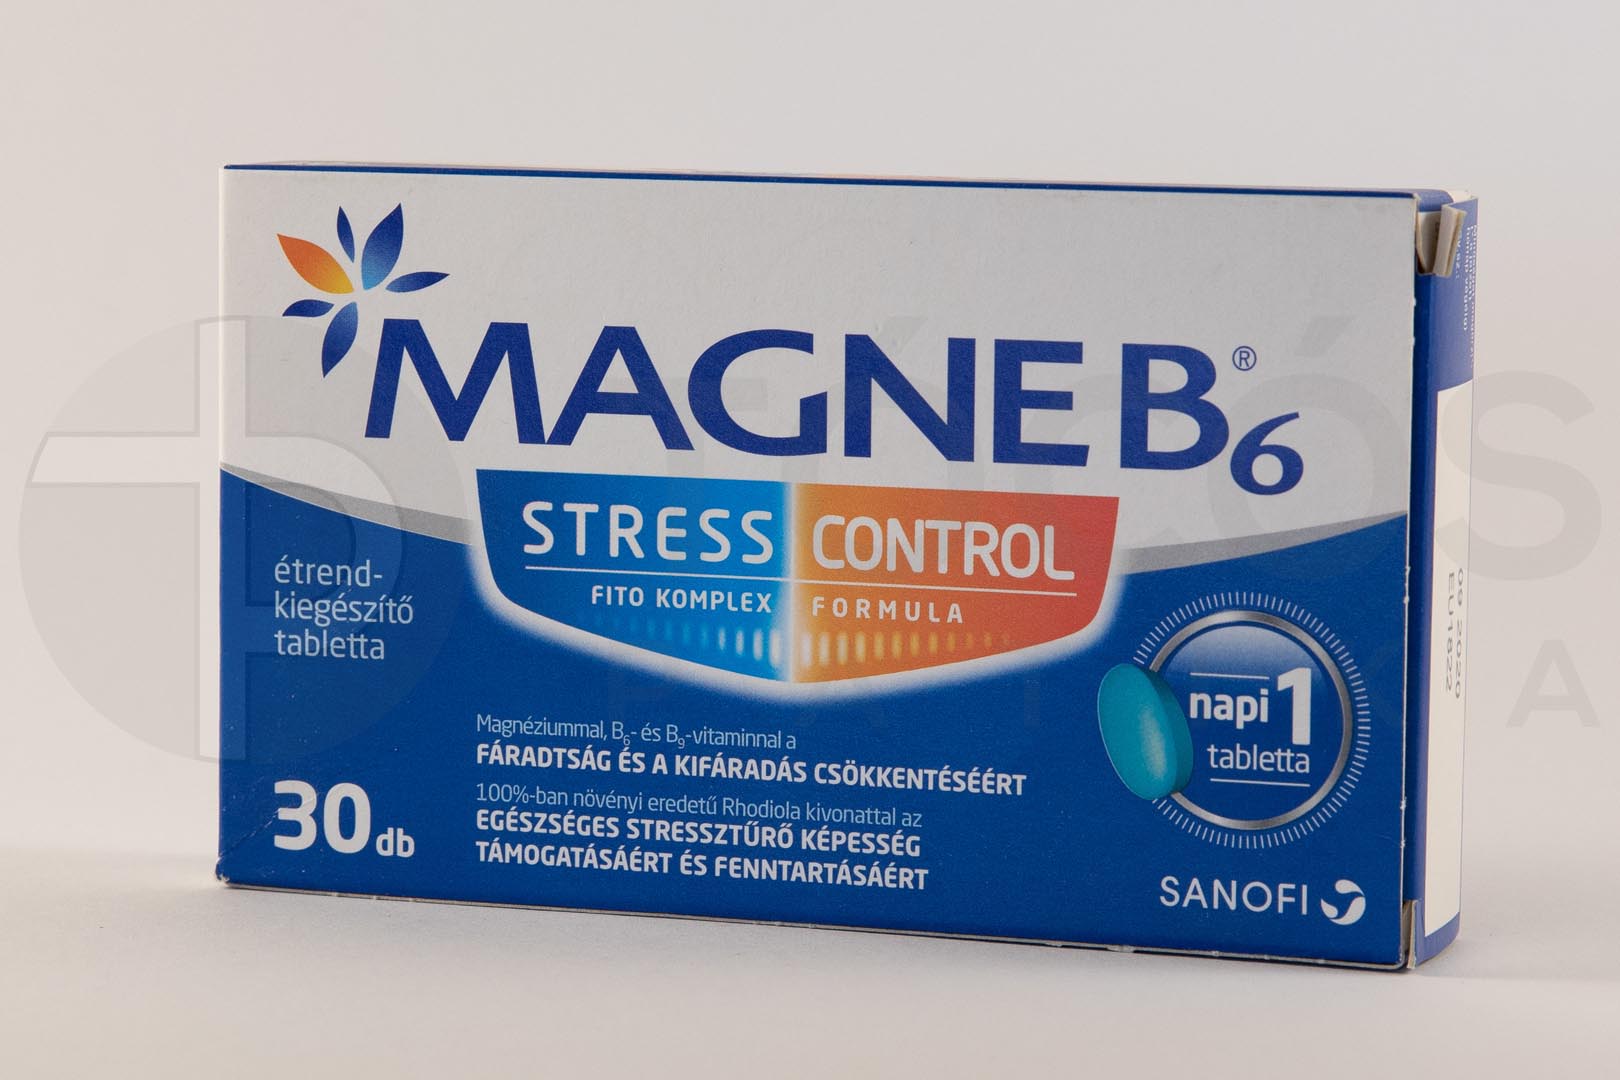 Magne B6 Stress Control tabletta 30x